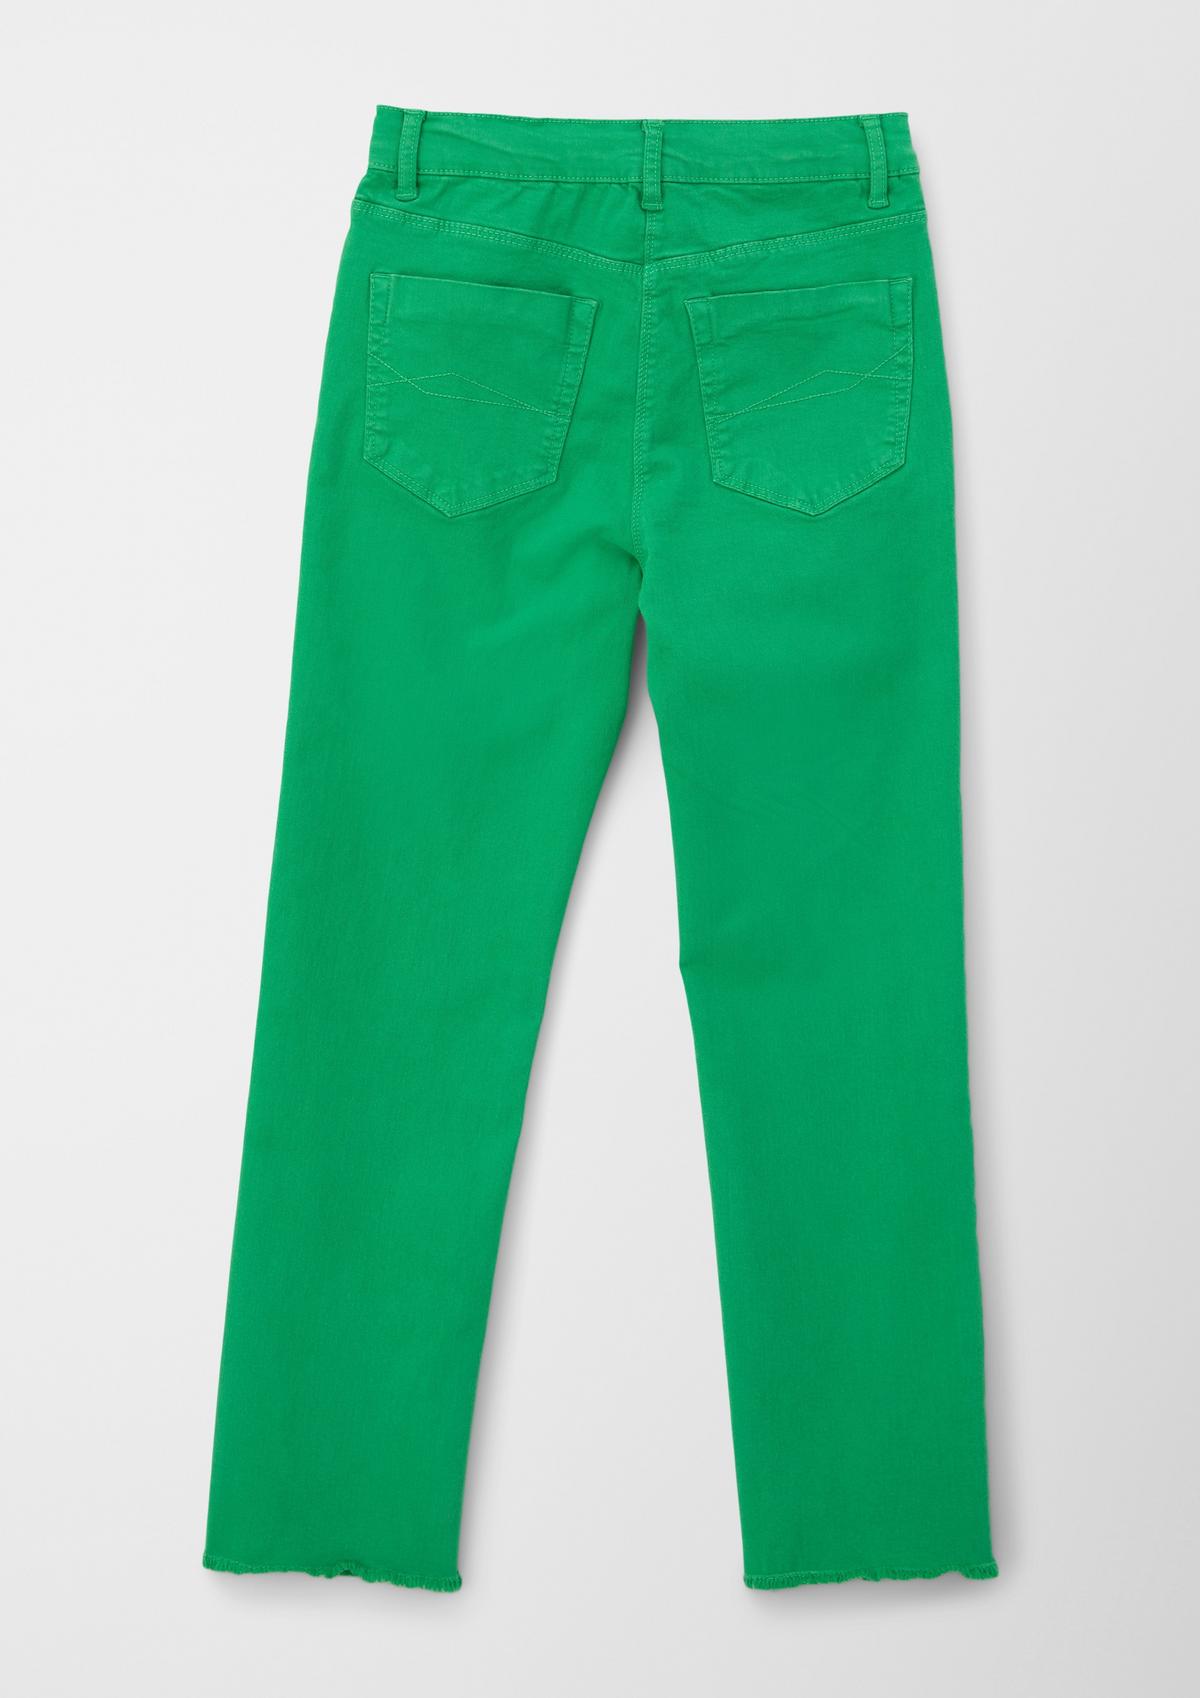 s.Oliver Regular: džíny s rovnými nohavicemi